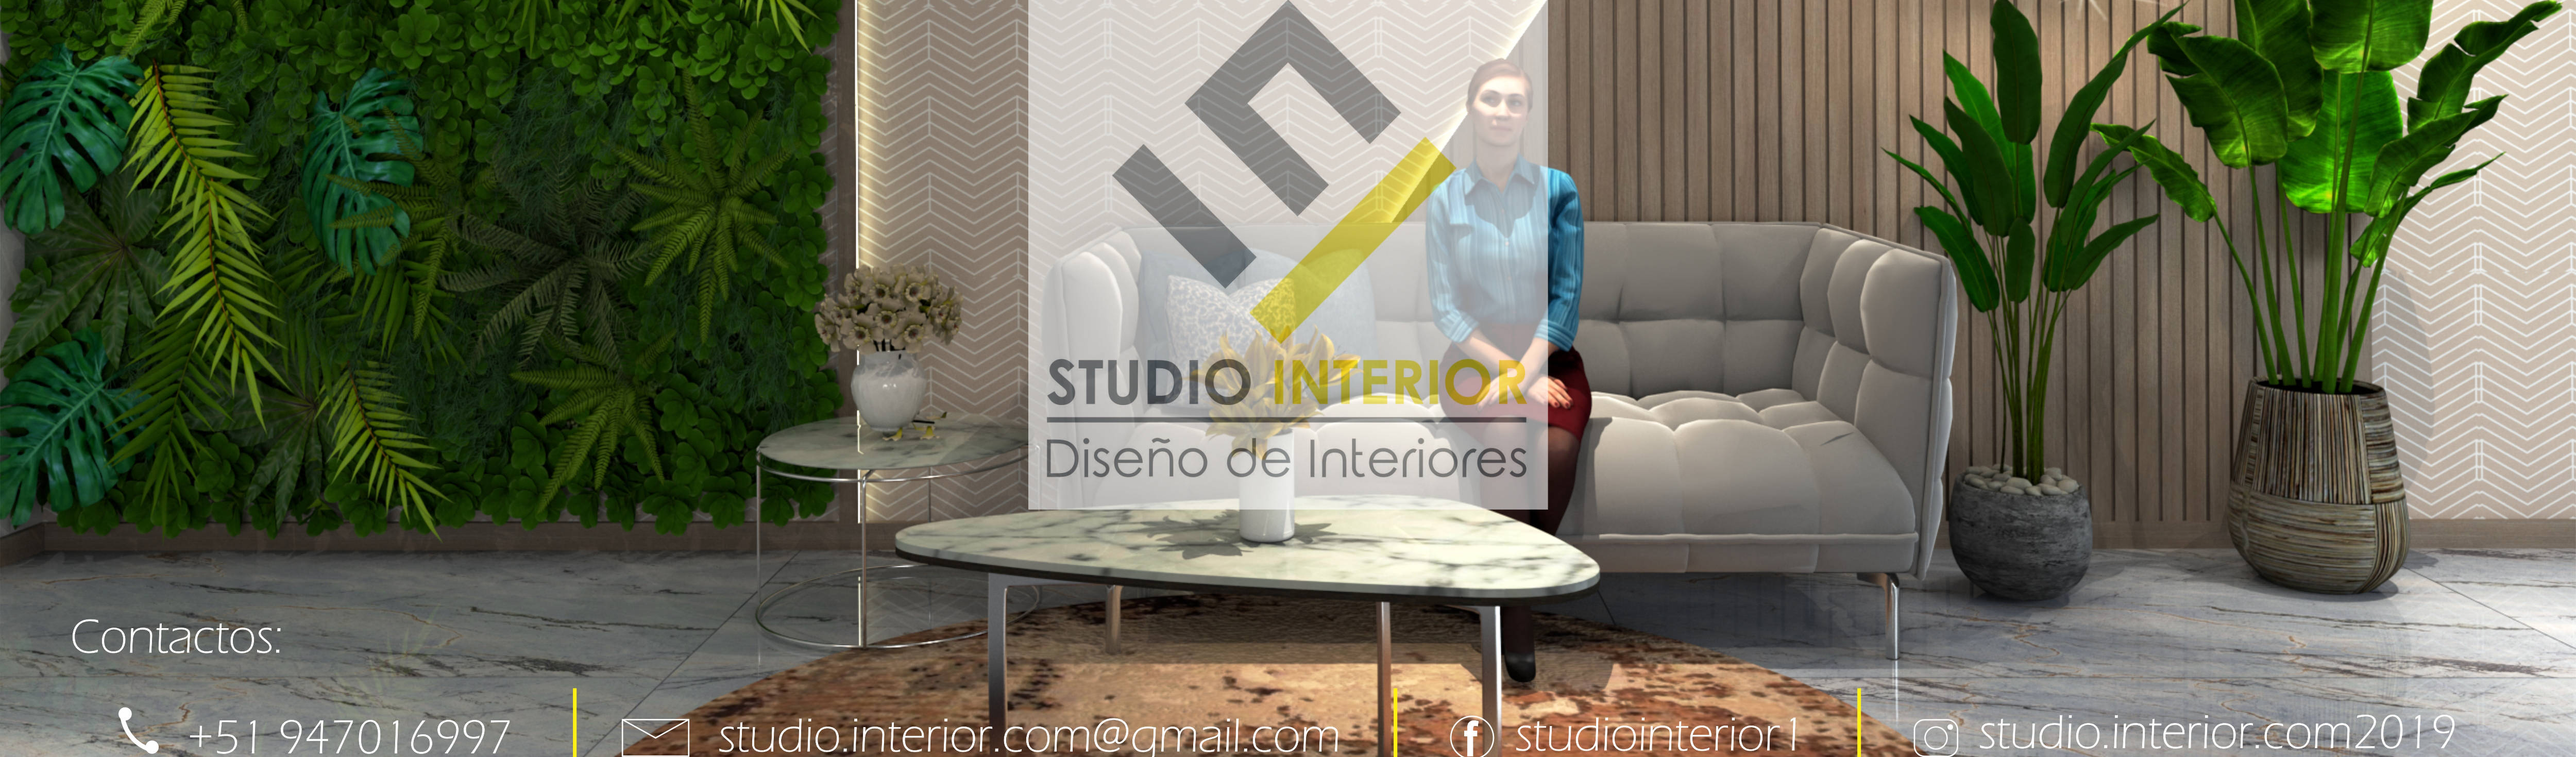 Studio Interior – Diseño de Interiores